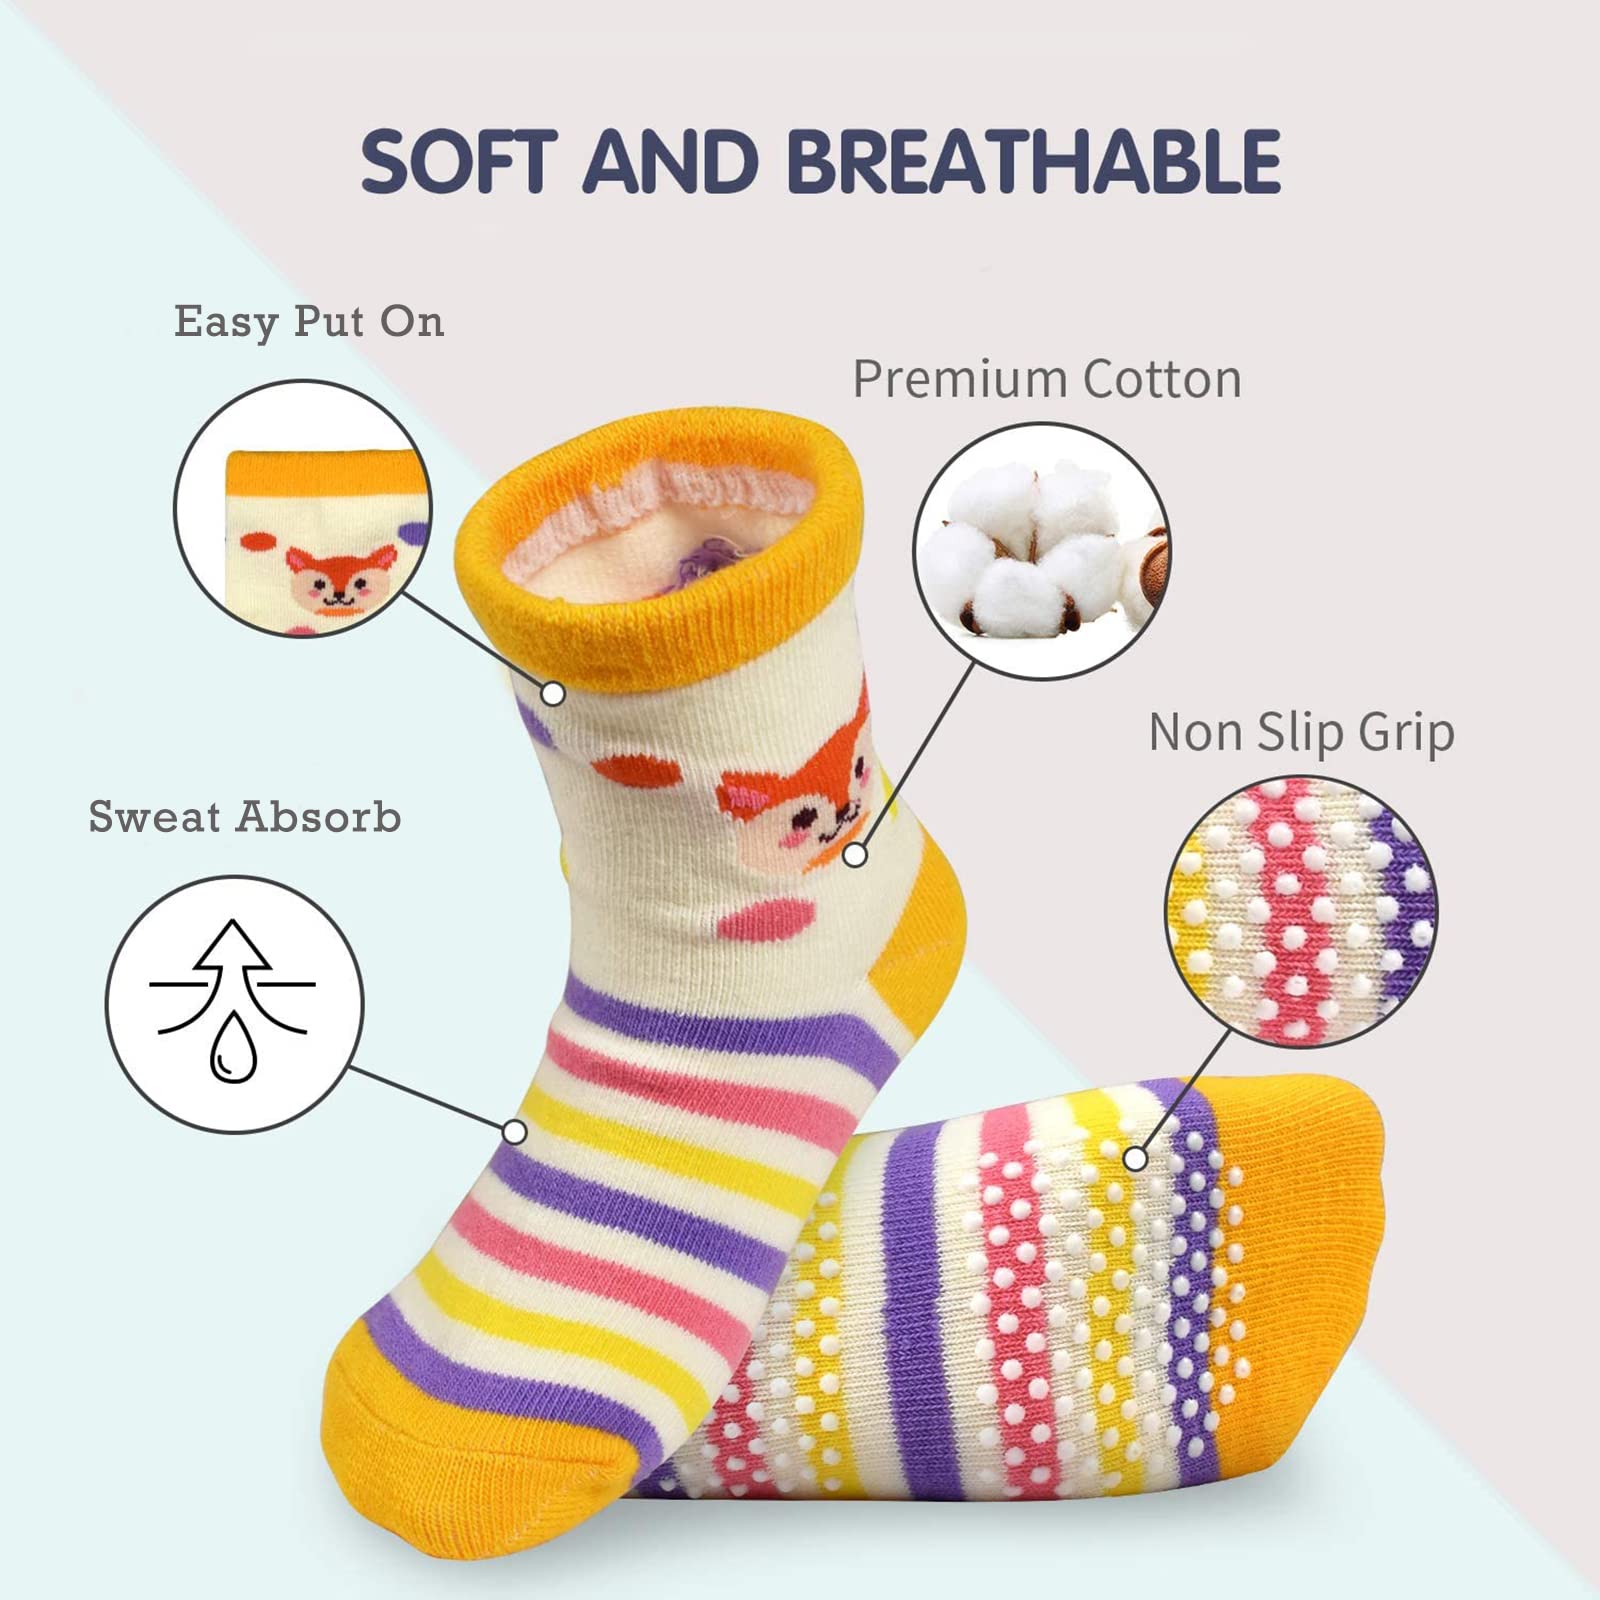 HYCLES Baby Girp Socks 12 Pairs for Boys Girls 1-7 Years Toddler Infant Kids Children Non Skid Anti-slip Socks